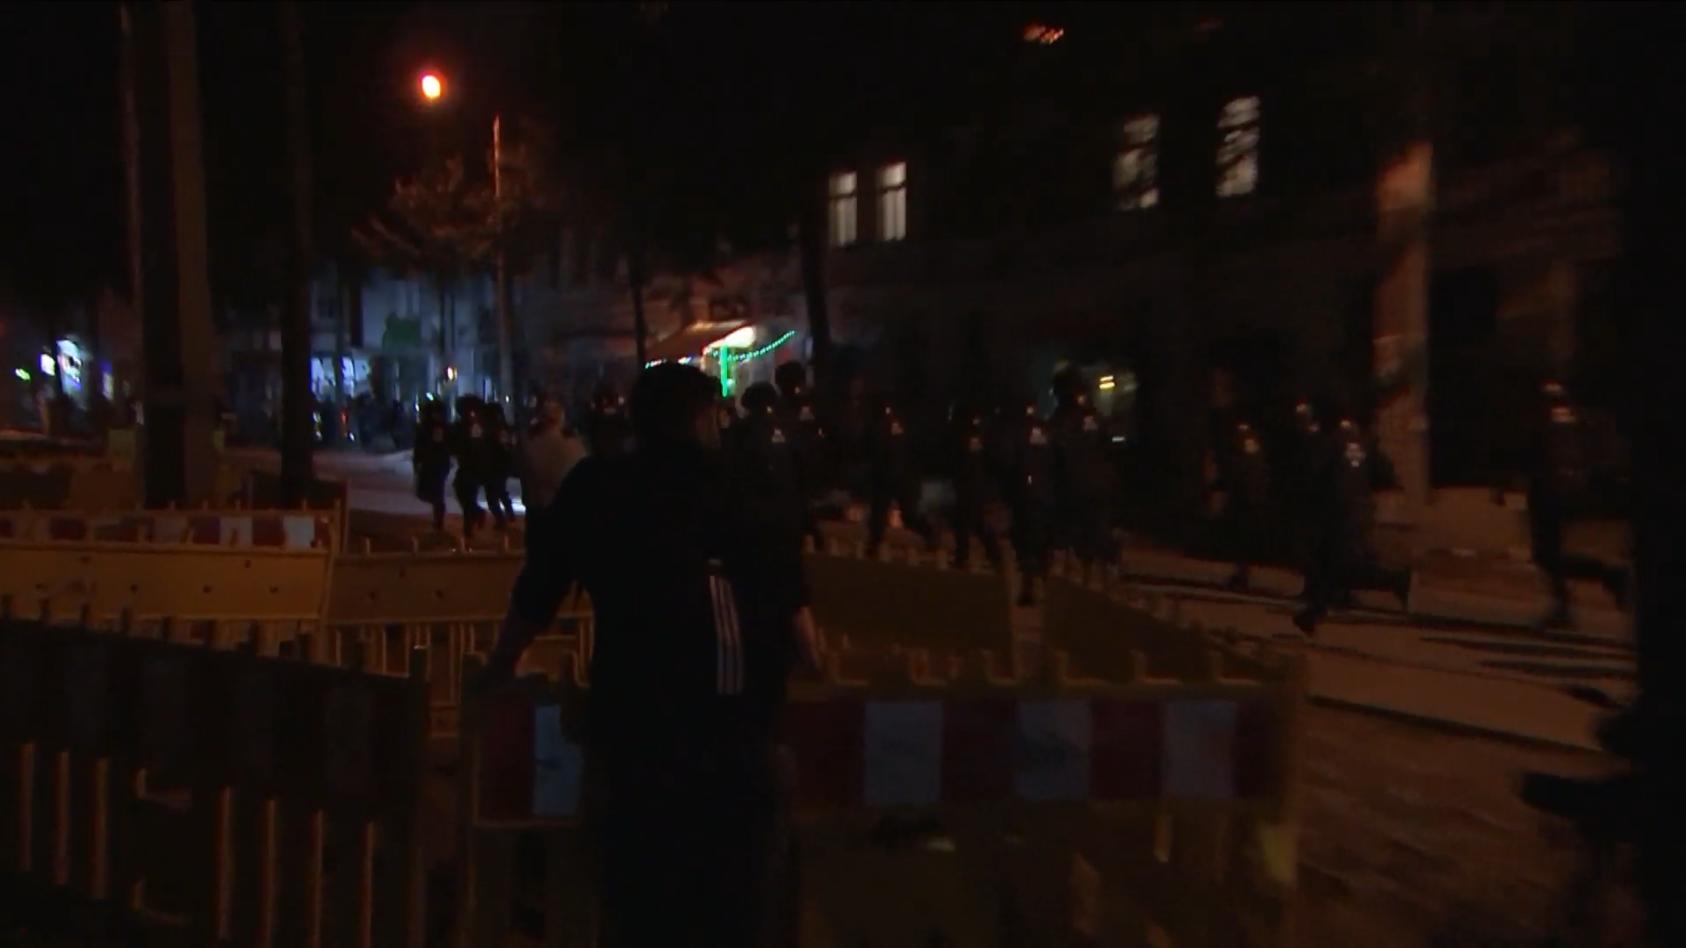 Vermummte greifen Polizisten in Leipzig an Steine auf Beamte und Fahrzeuge geworfen